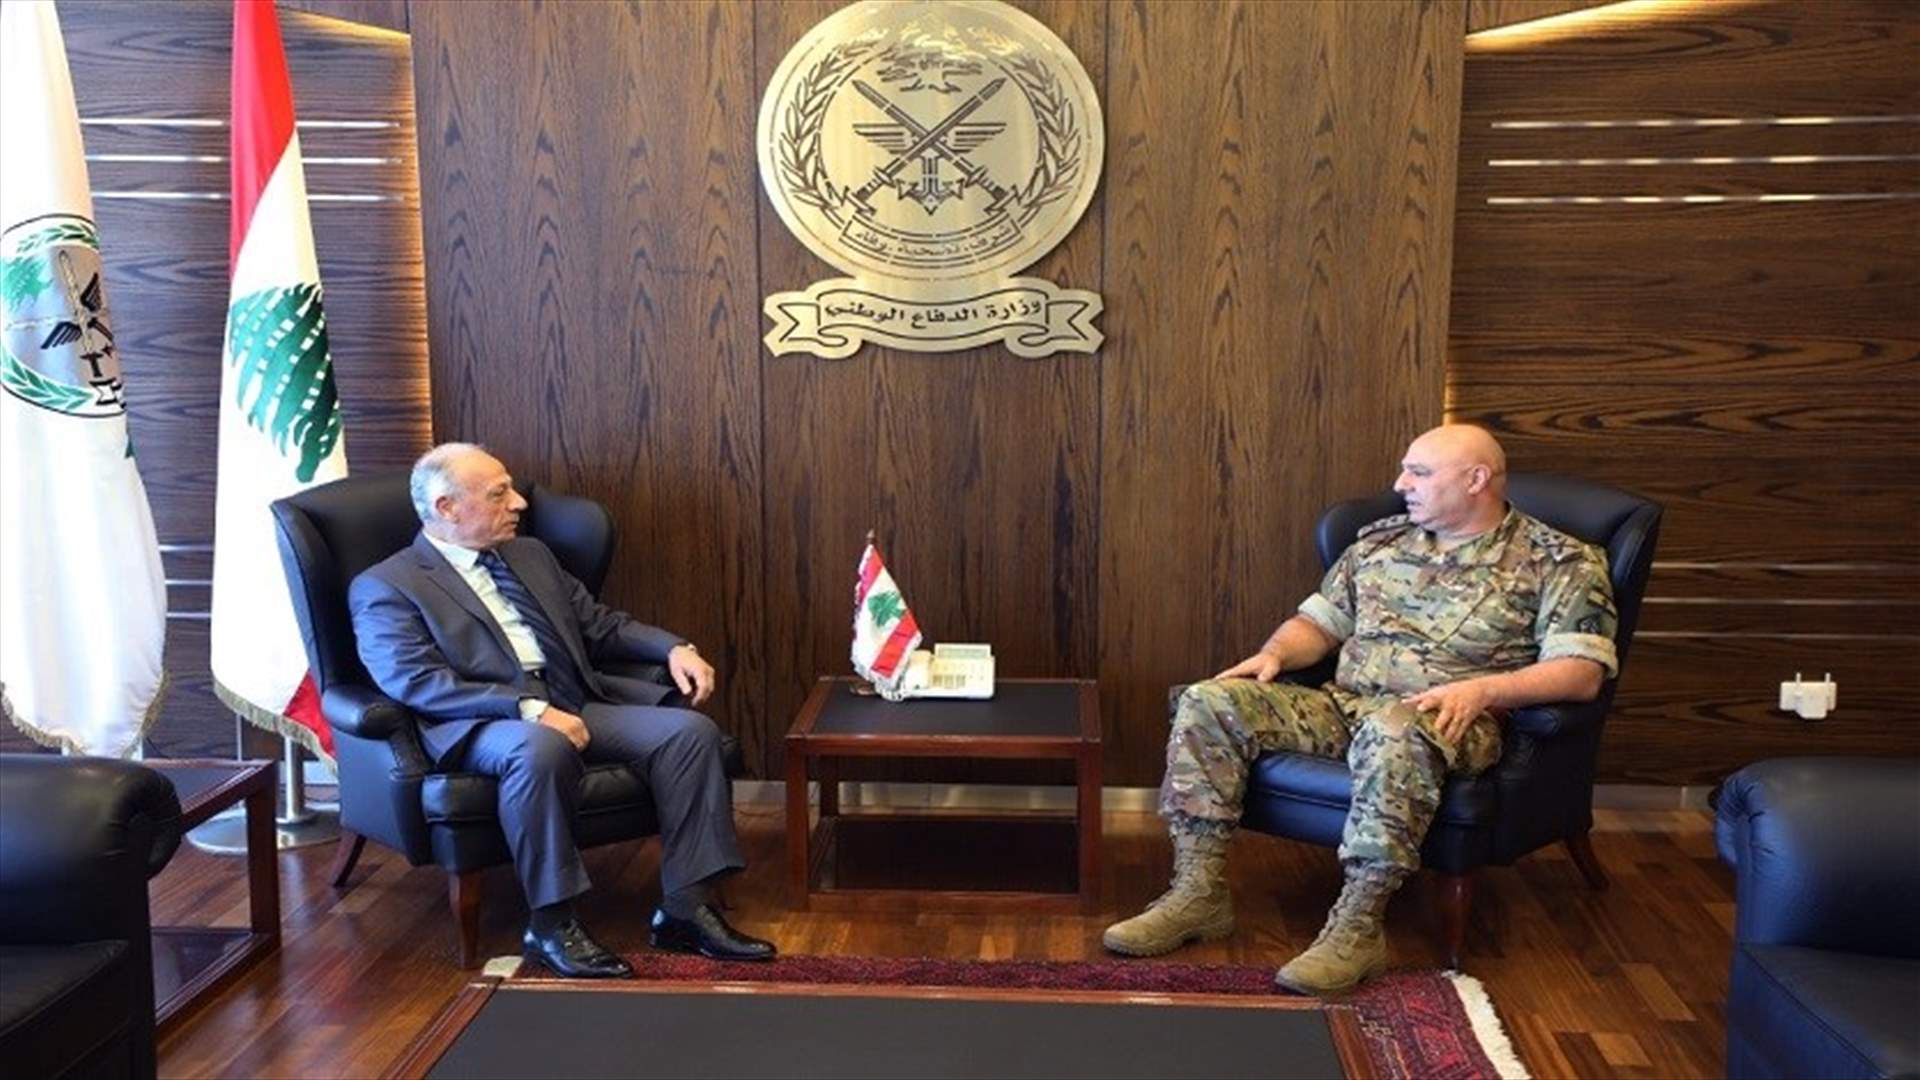 وزير الدفاع التقى العماد جوزاف عون... وتوافق على أهمية دور الجيش في هذه المرحلة الدقيقة